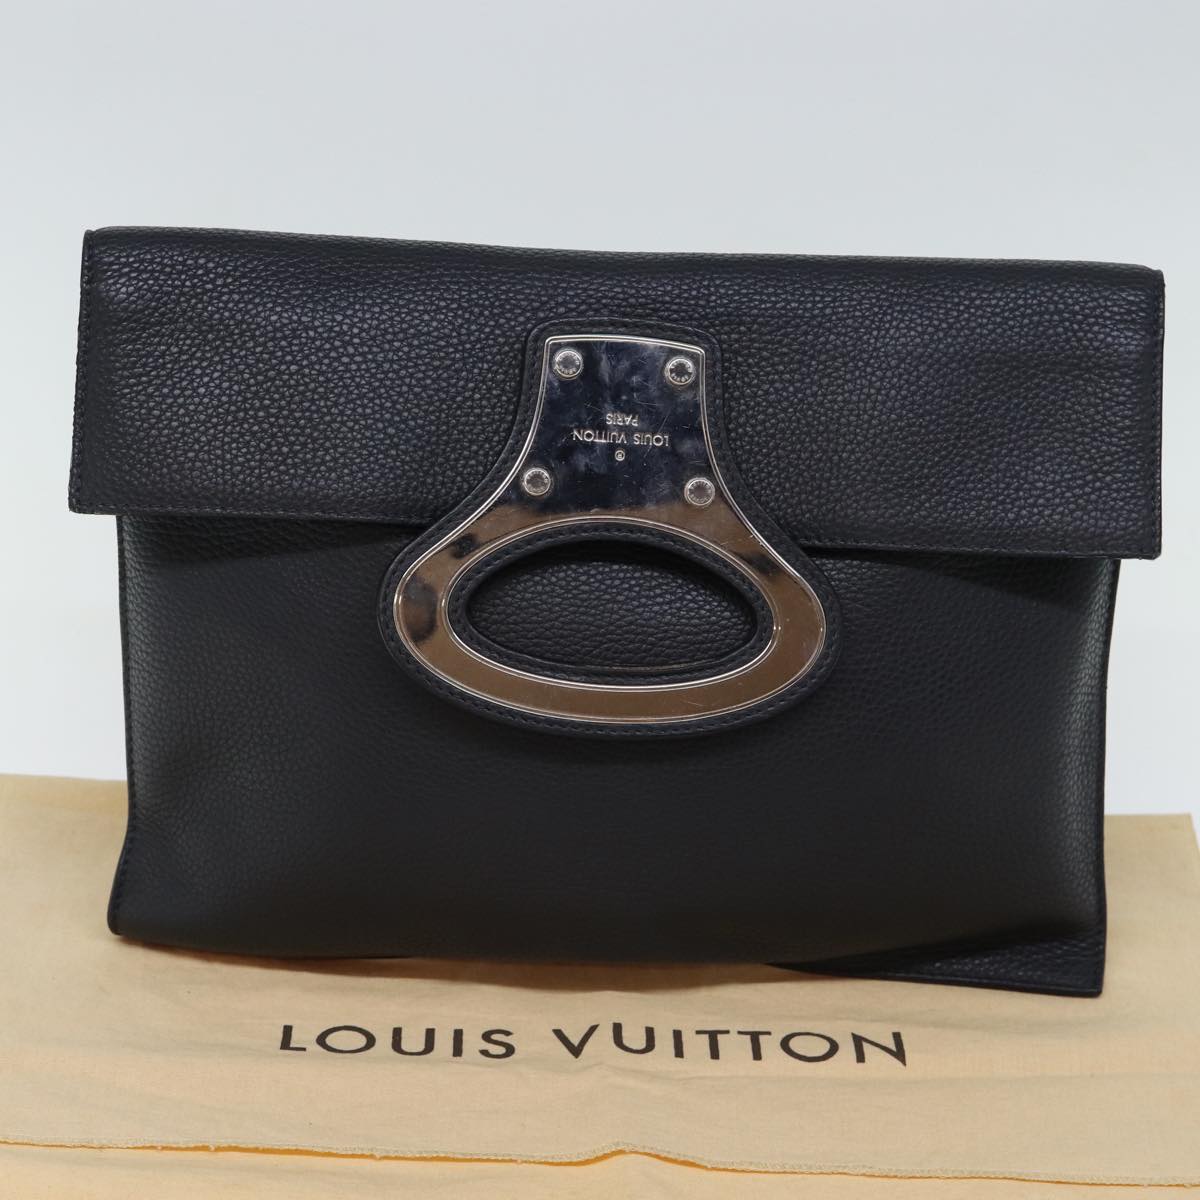 LOUIS VUITTON Taurillon Portfolio Clutch Bag Leather Black M48811 LV Auth 73222